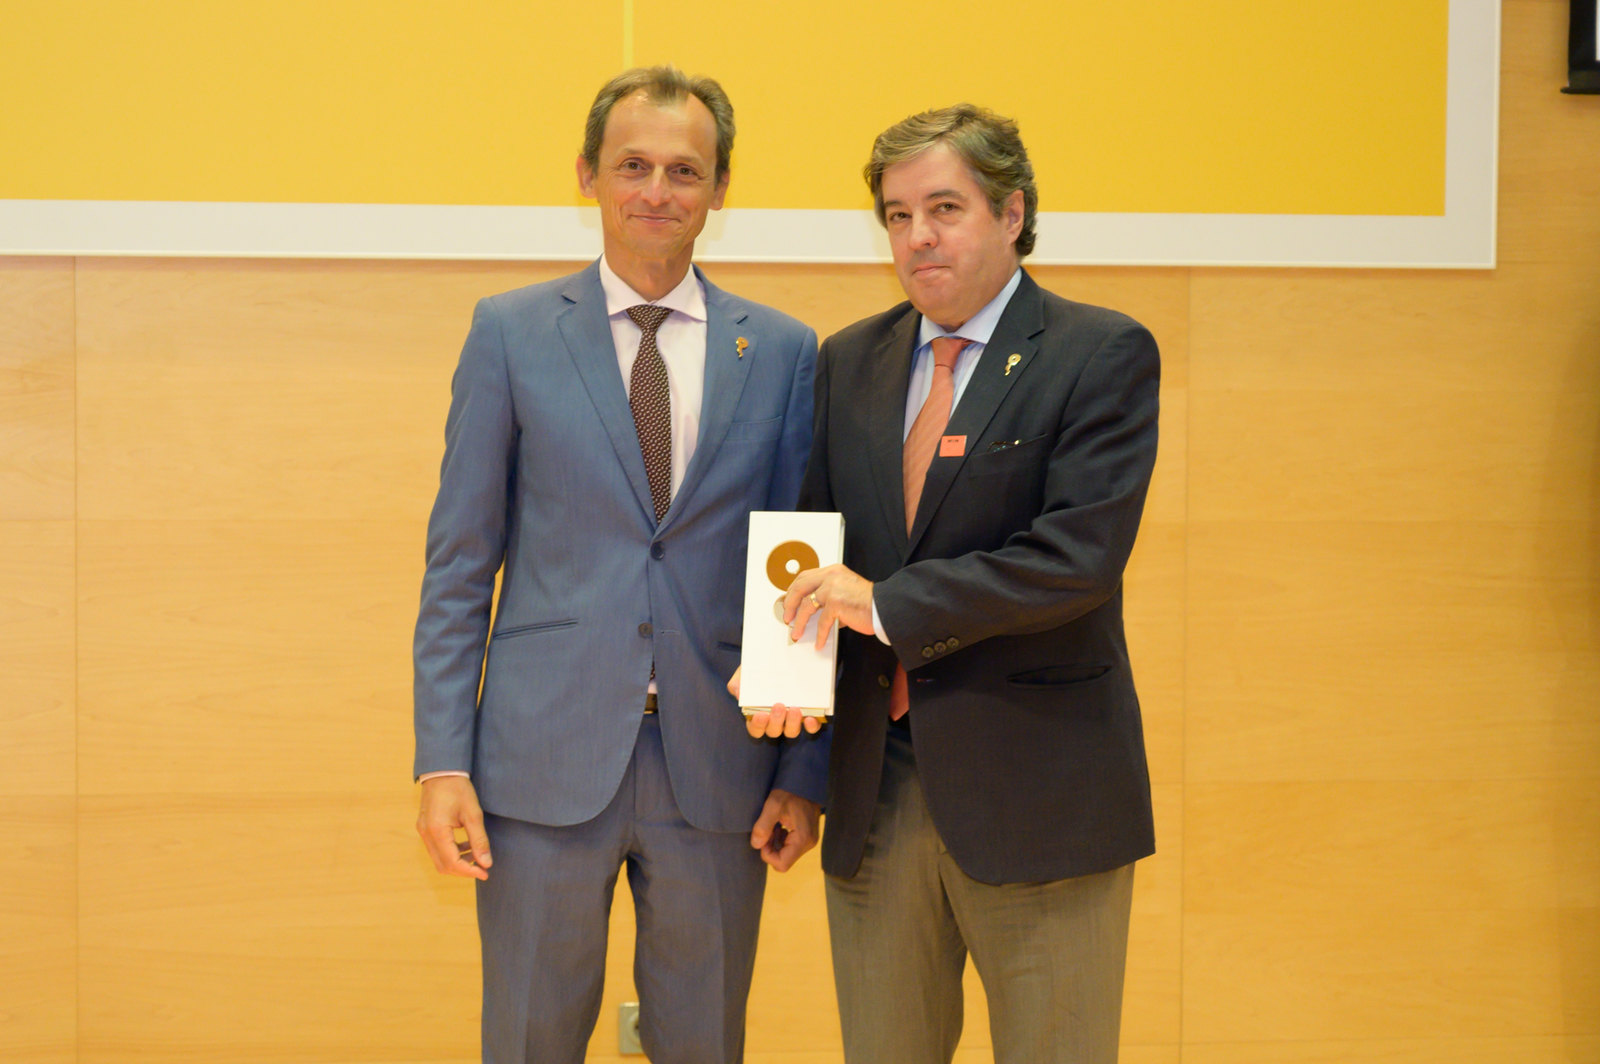 Jordi Alberch, director de l'Institut de Neurociències de la UB, va recollir l'acreditació de mans del ministre Pedro Duque. Fotografia: Alejandro Muñoz Fernández / MICIU